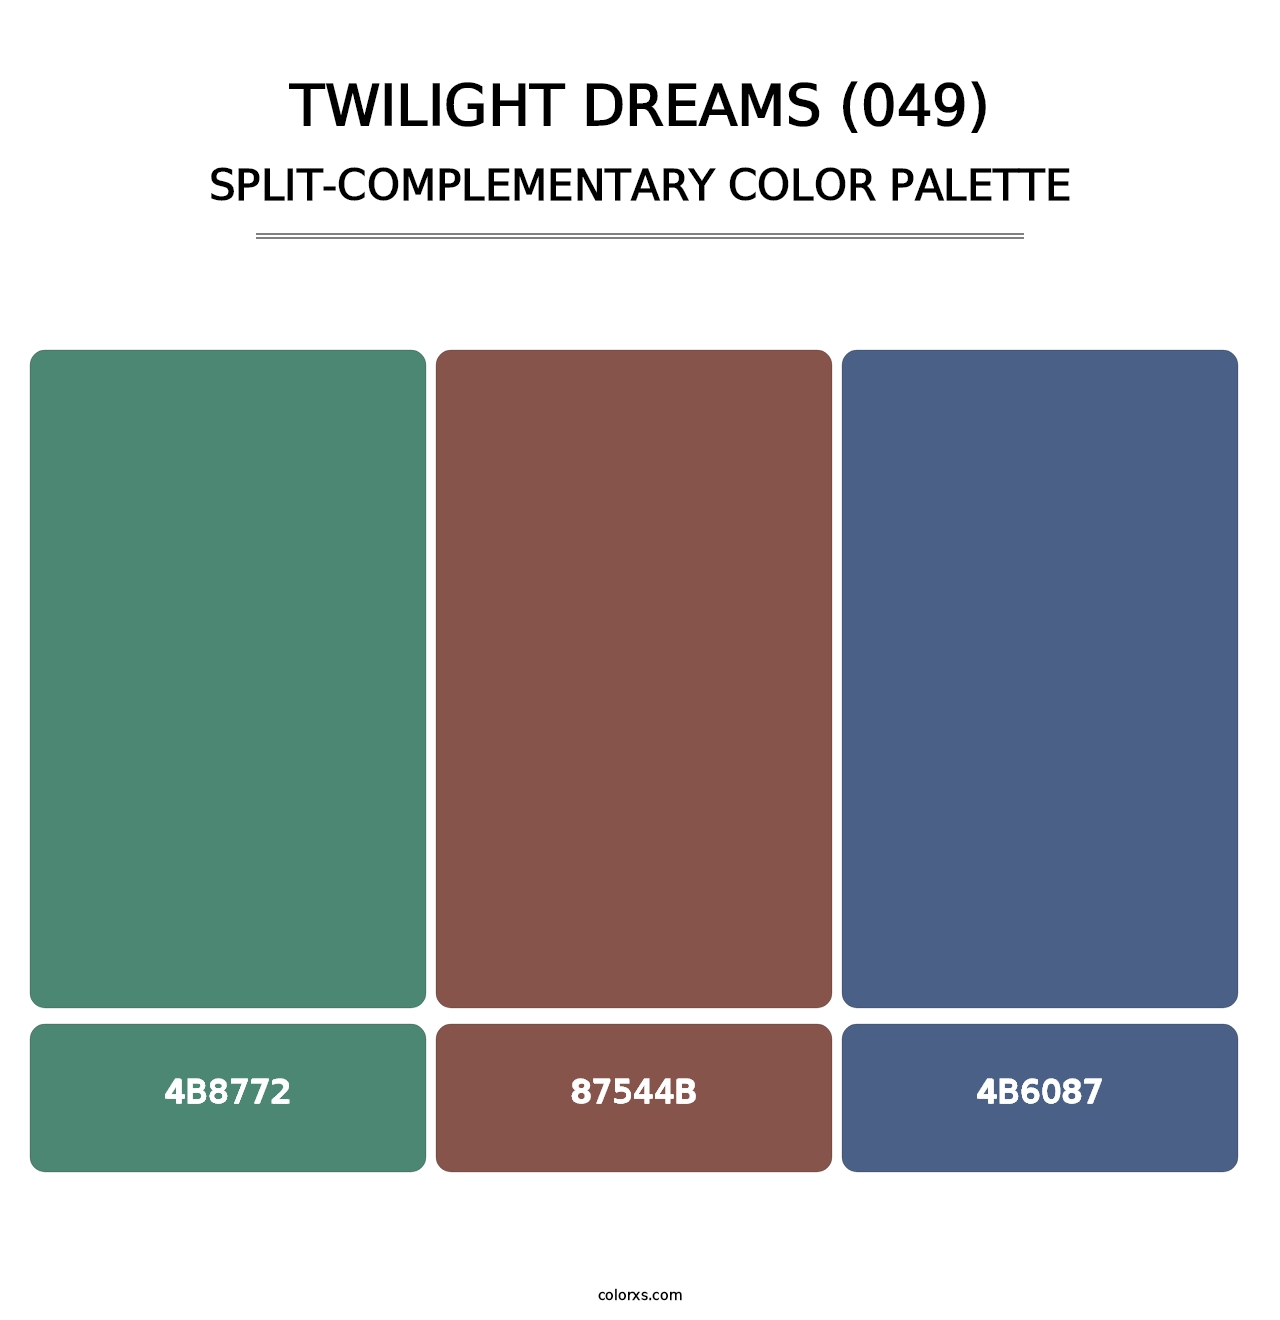 Twilight Dreams (049) - Split-Complementary Color Palette